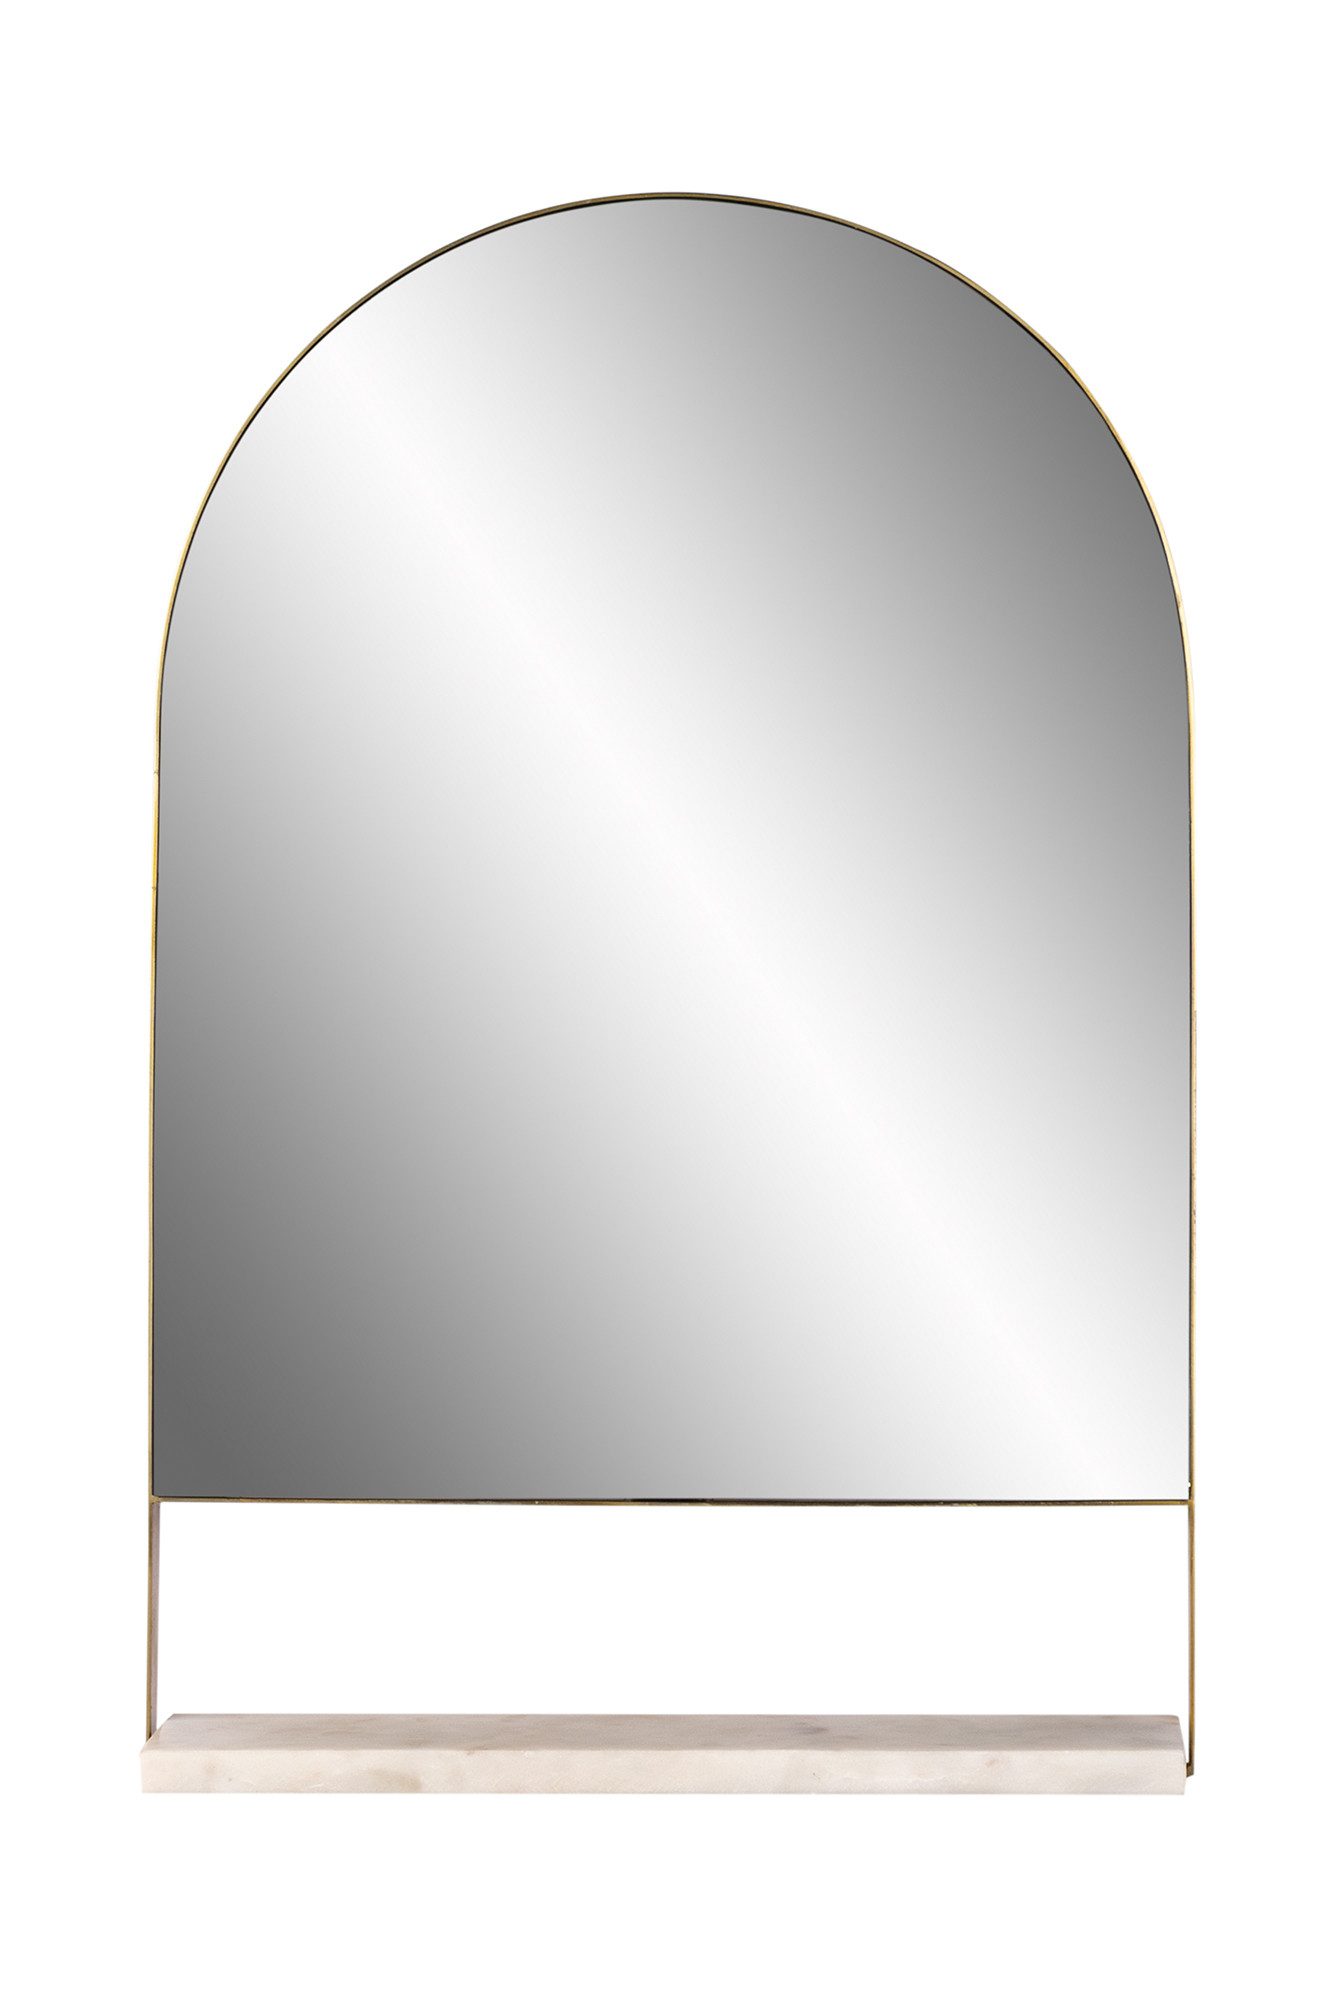 Qiyano Spiegel Wandspiegel Malie 100 Weiß